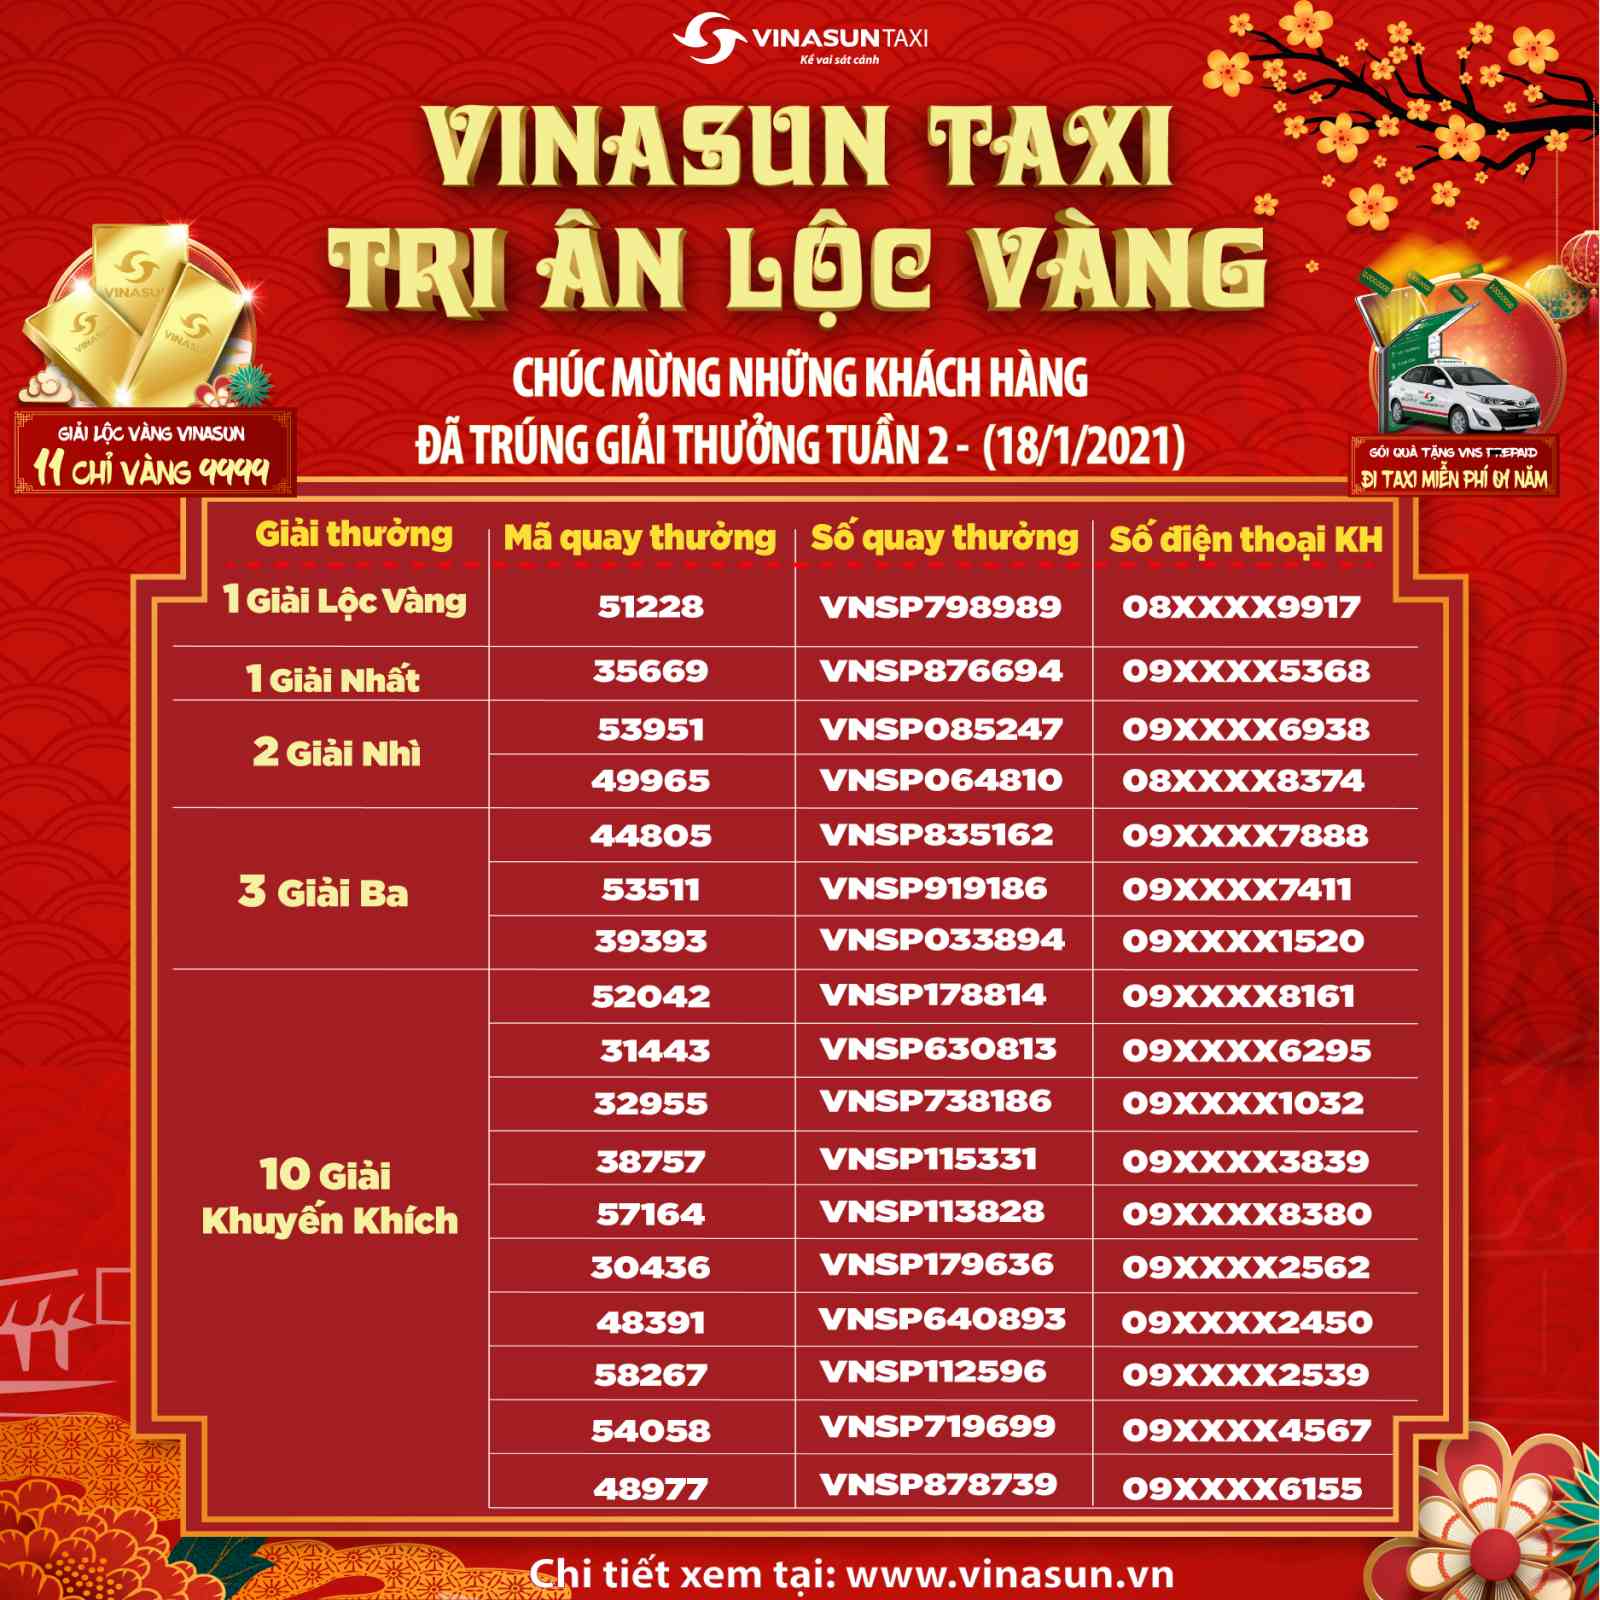 Kết quả trúng thưởng chương trình Vinasun Taxi - Tri Ân Lộc Vàng - Tuần 2